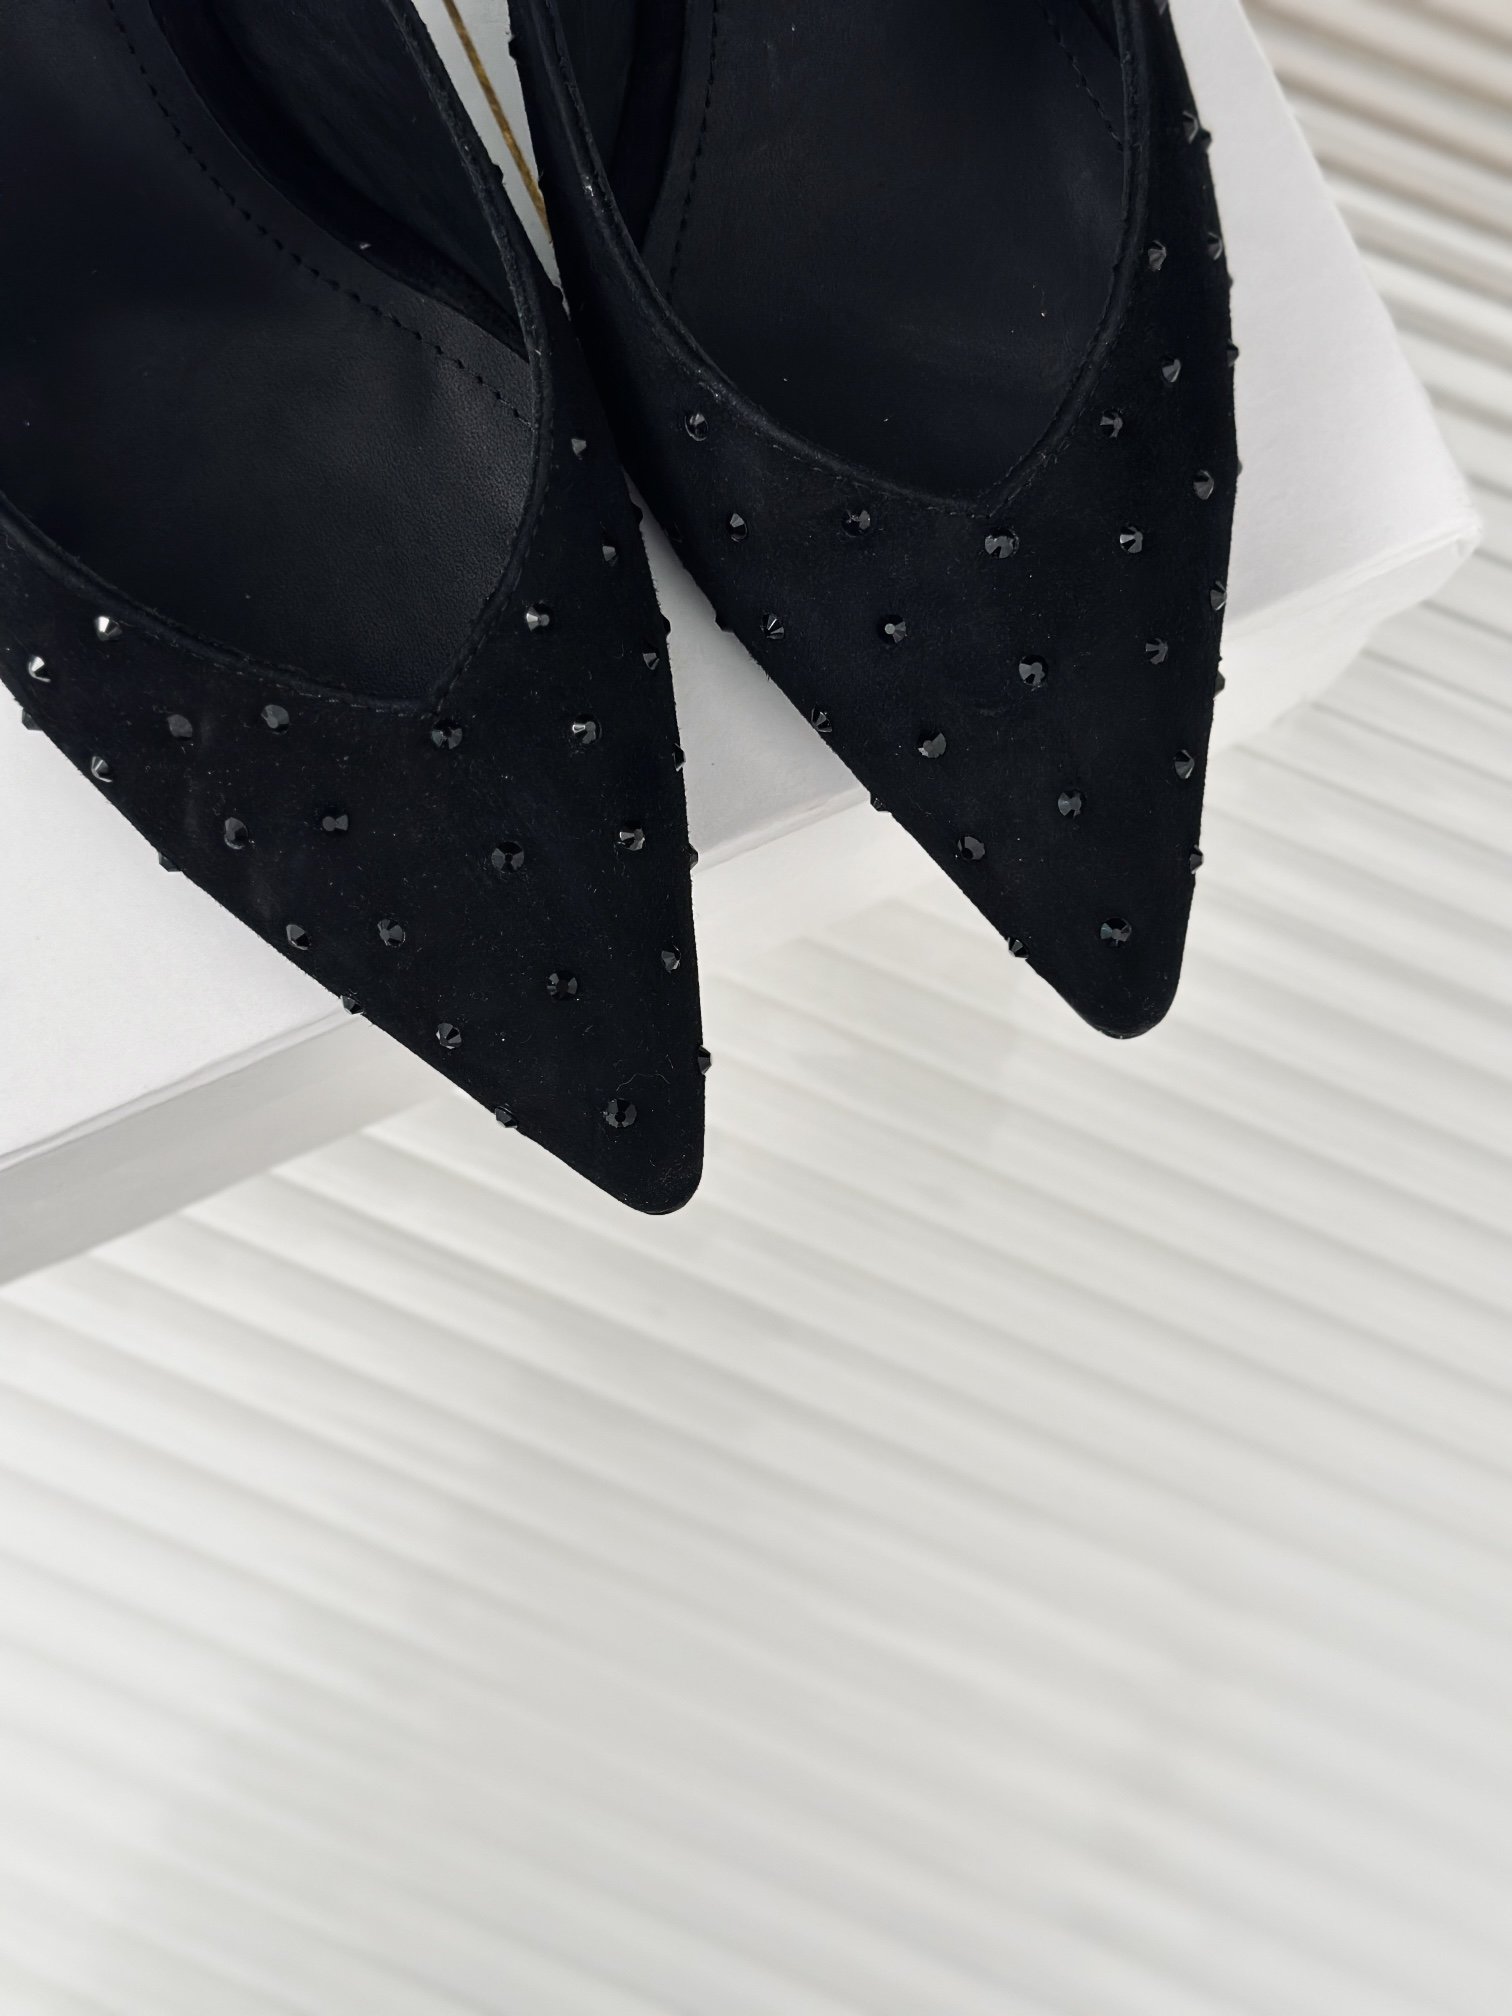 Balmain巴尔曼经典尖头性感铆钉高跟凉鞋来自法国品牌深受众多明星和皇室贵族的亲睐闪亮的装饰和面料是这